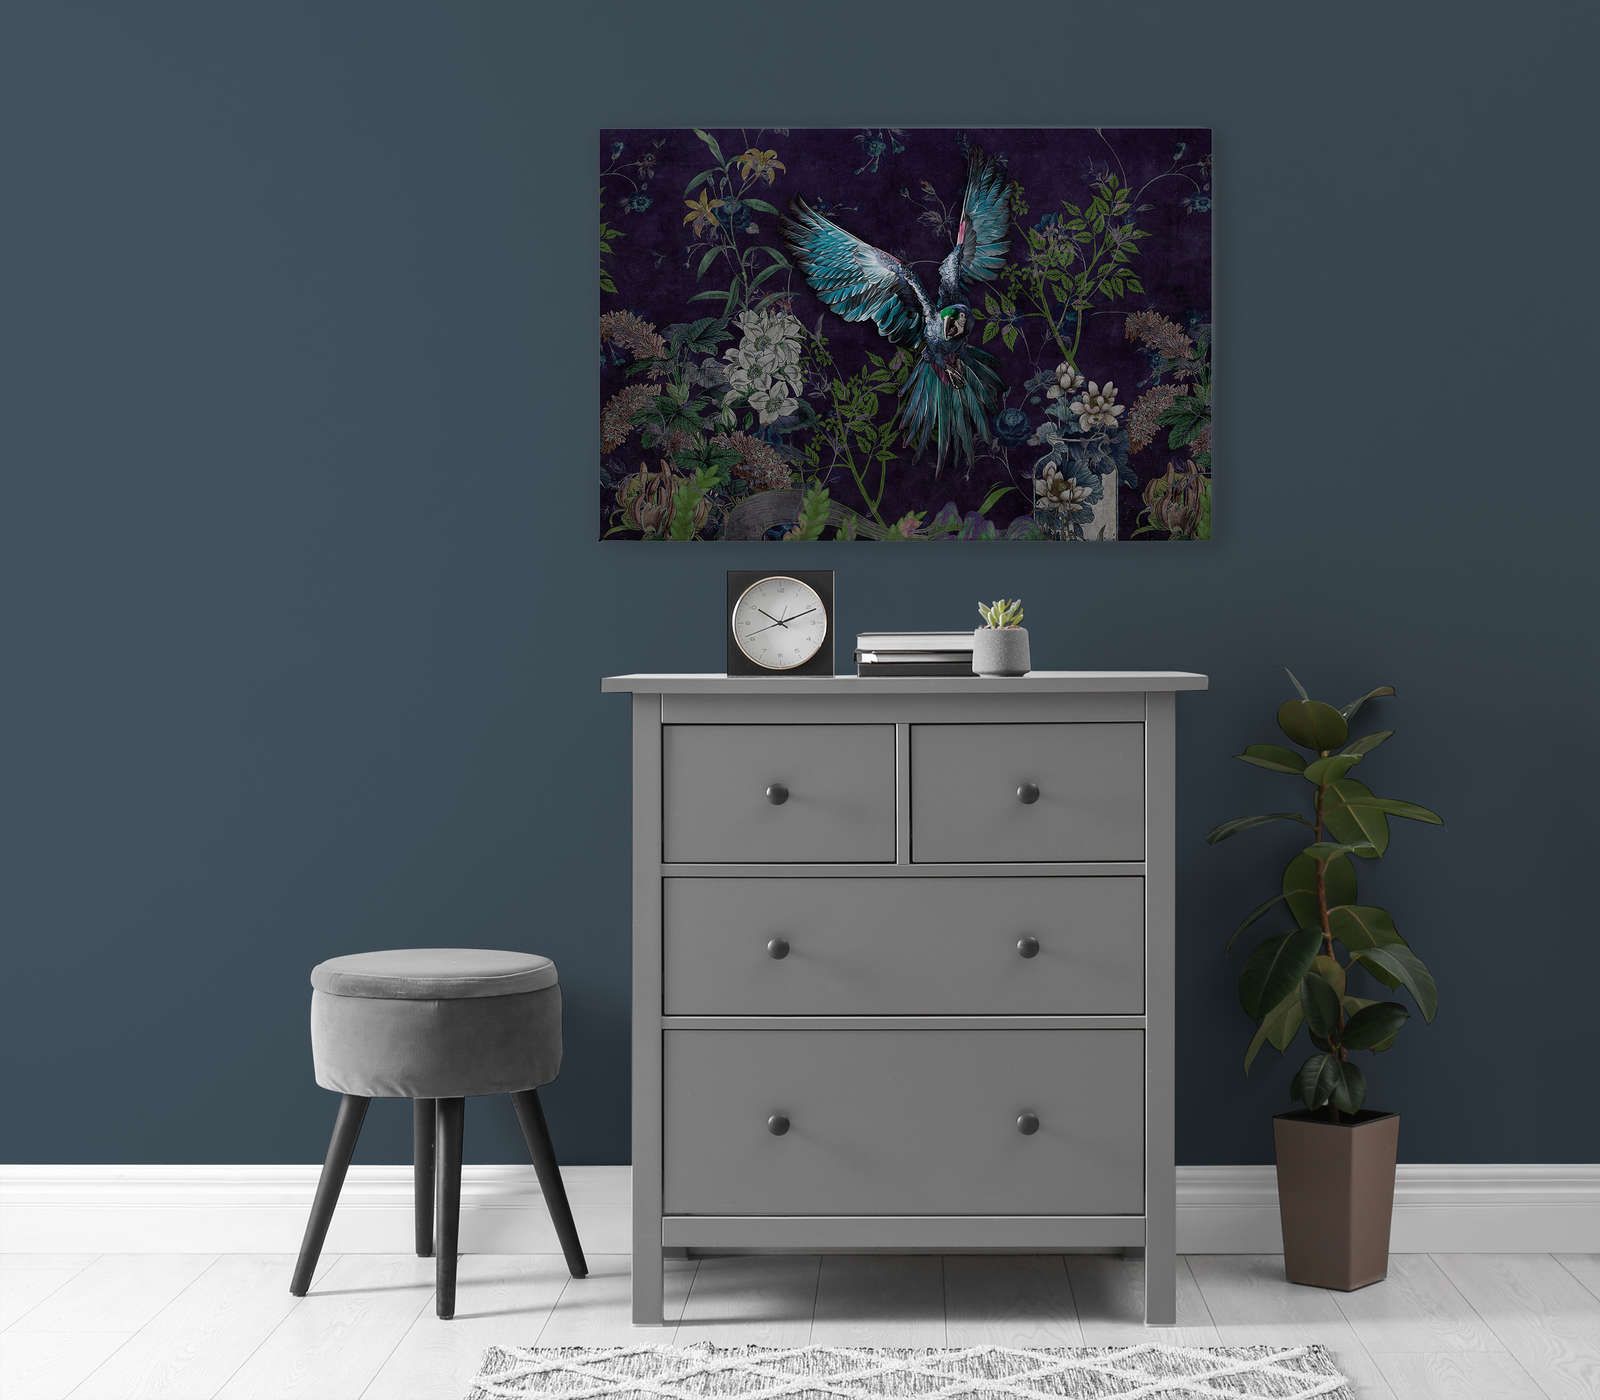             Tropical Hero 2 - Perroquet toile fleurs & fond noir - 0,90 m x 0,60 m
        